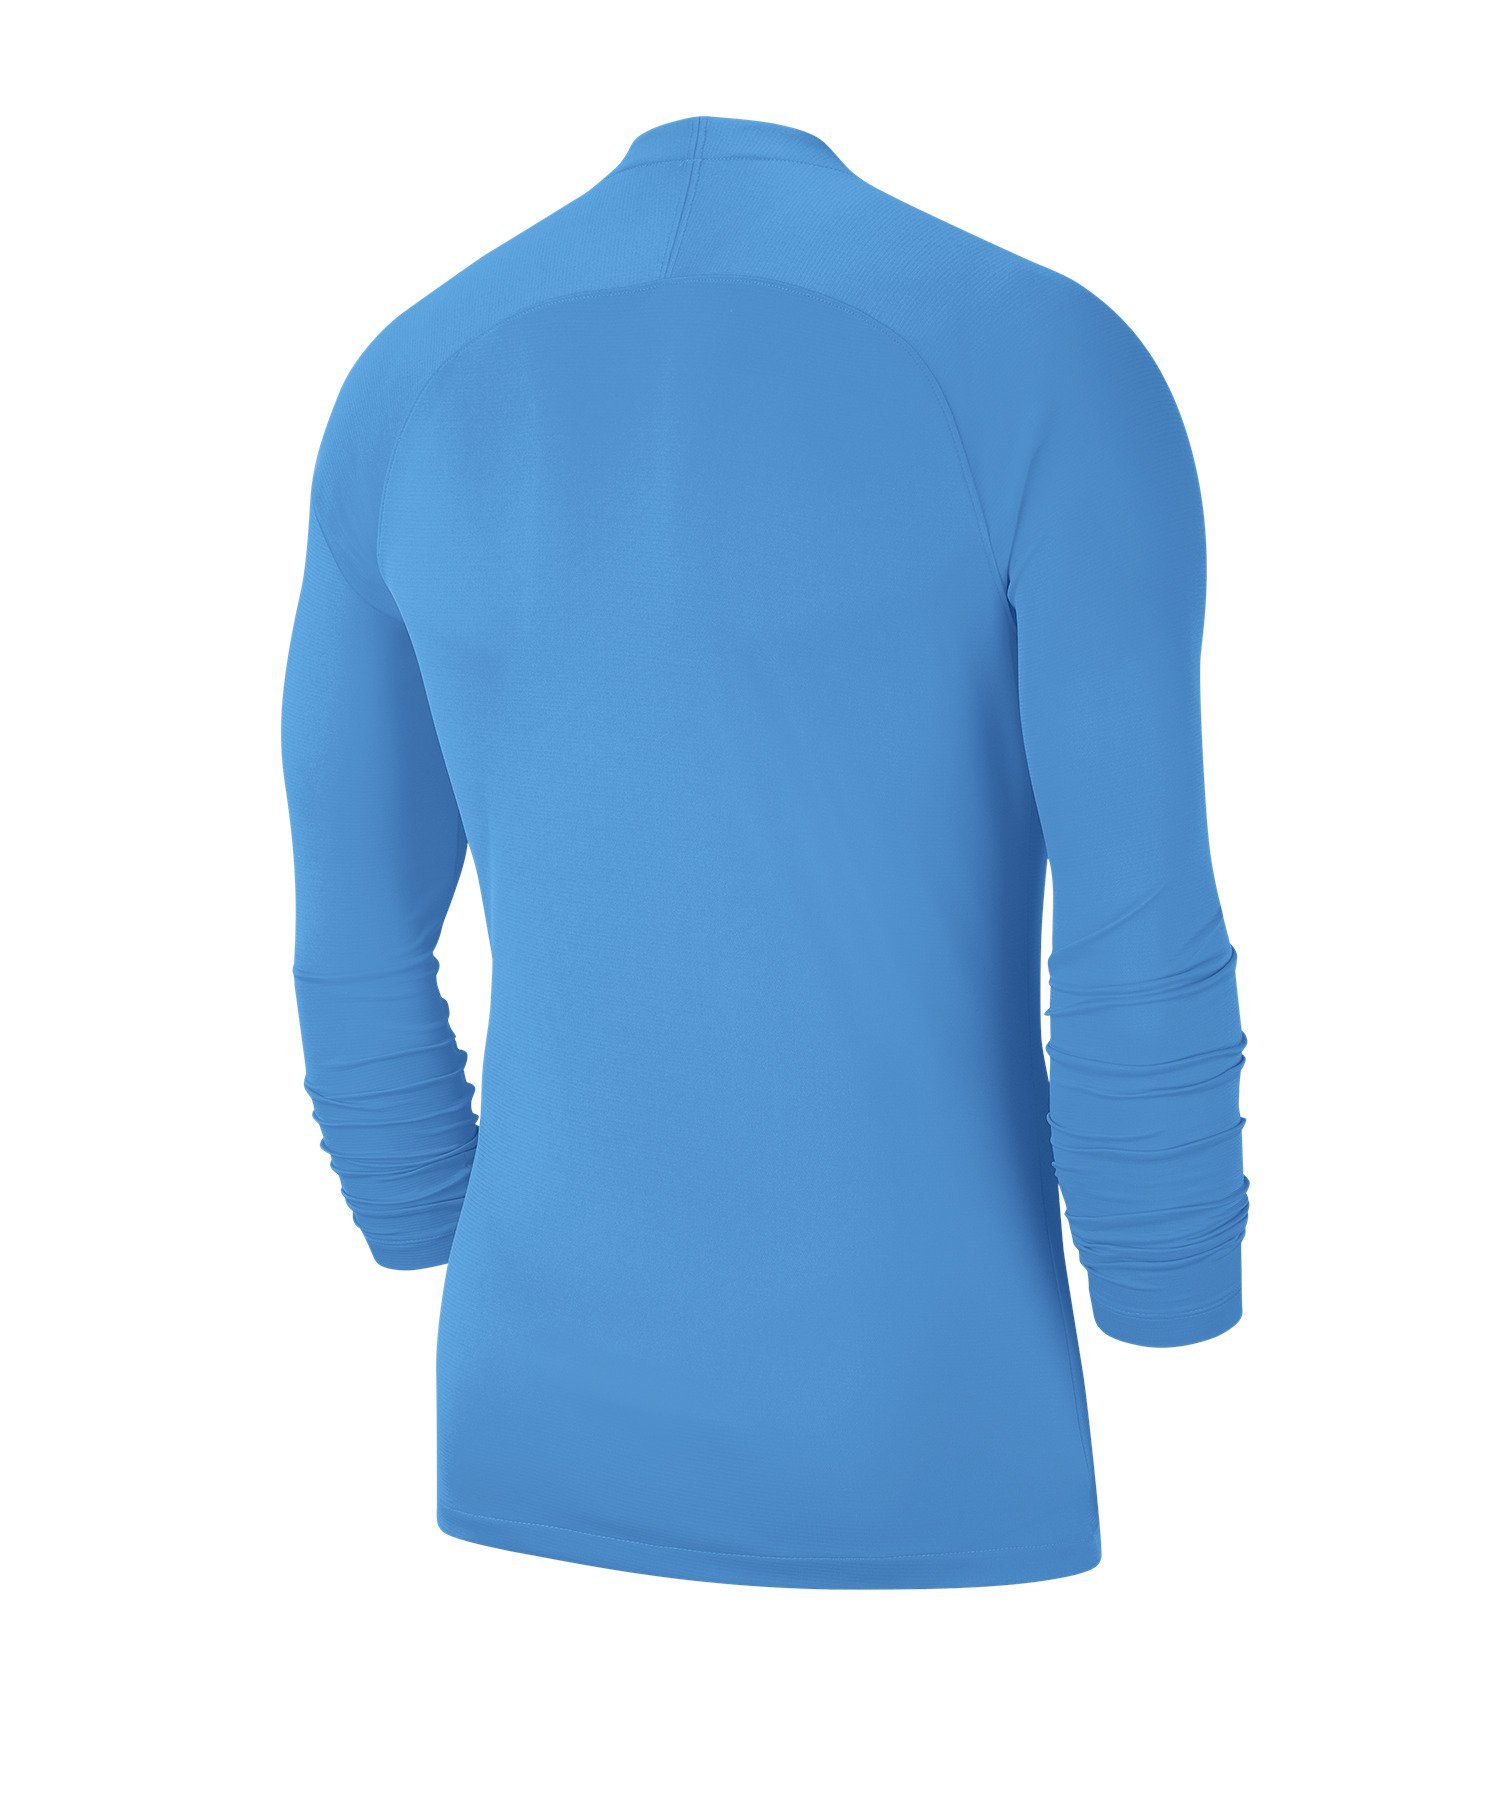 Park Nike Layer First Kids Top Daumenöffnung blau Funktionsshirt